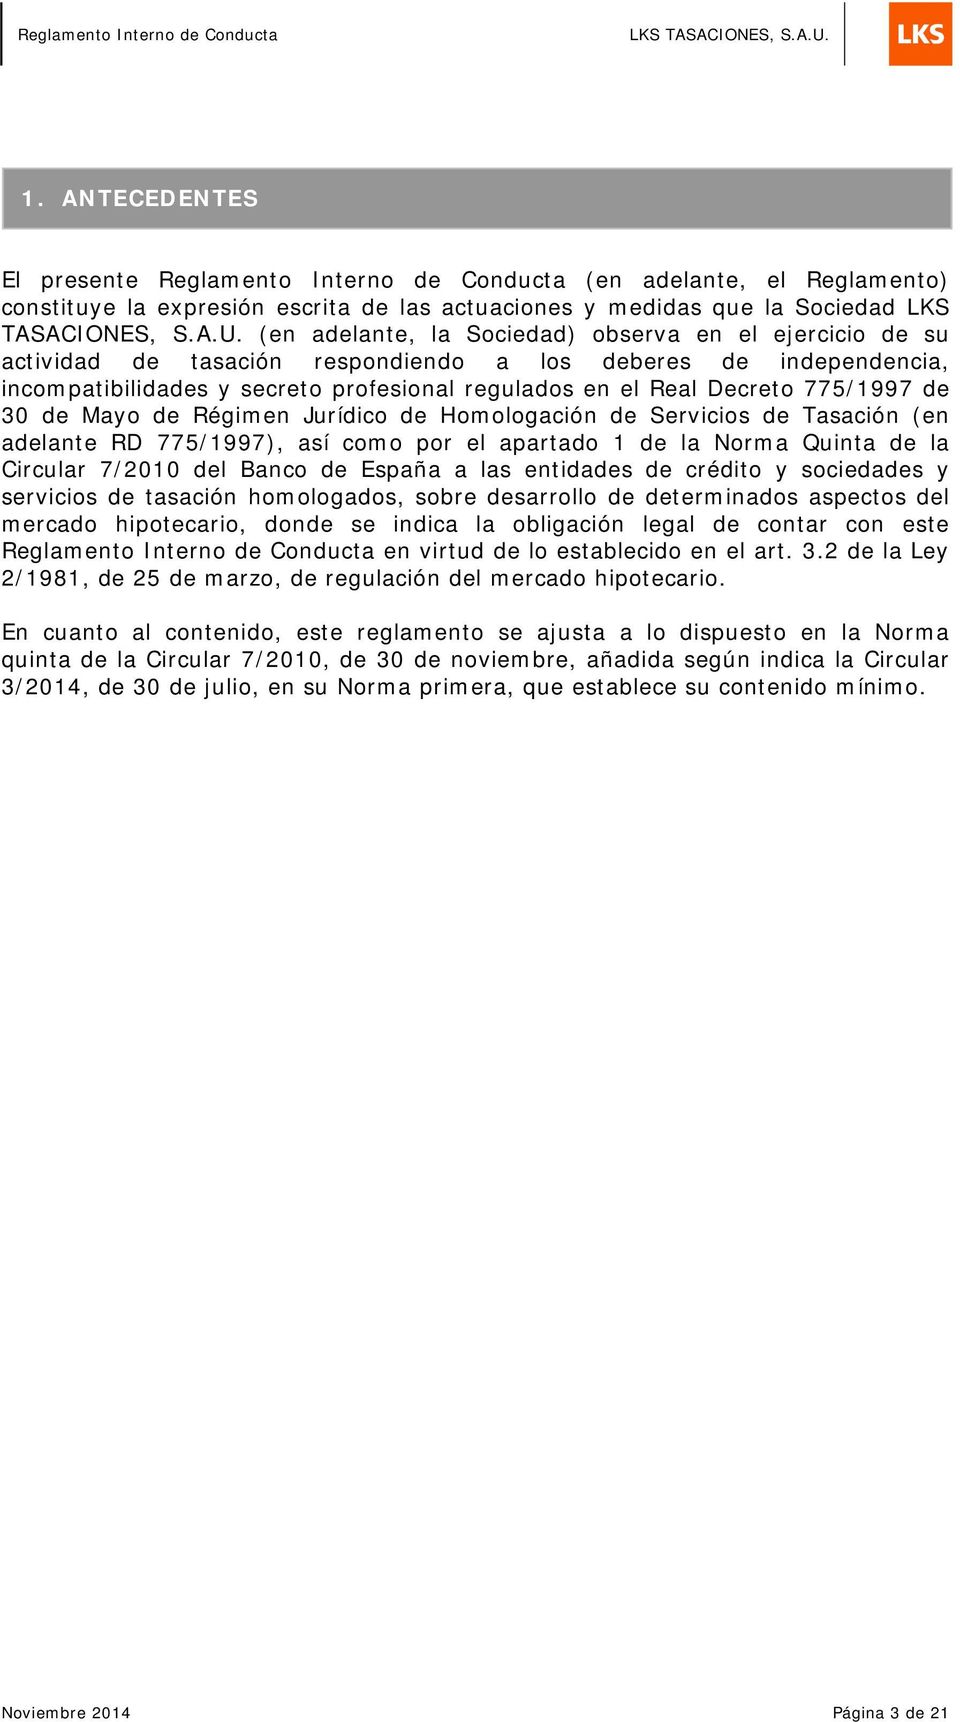 775/1997 de 30 de Mayo de Régimen Jurídico de Homologación de Servicios de Tasación (en adelante RD 775/1997), así como por el apartado 1 de la Norma Quinta de la Circular 7/2010 del Banco de España